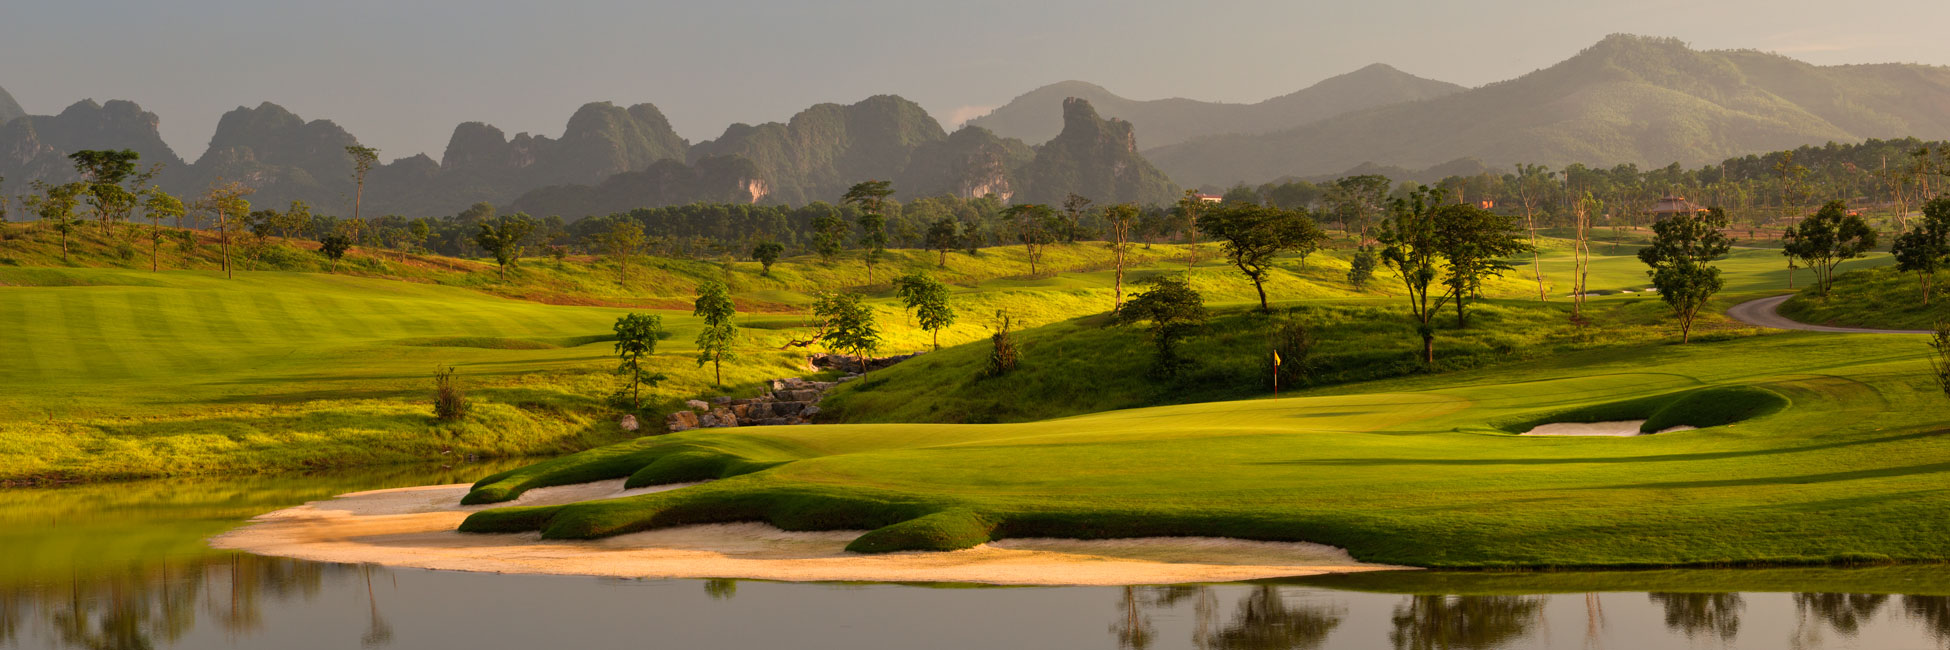 Golf in Hanoi